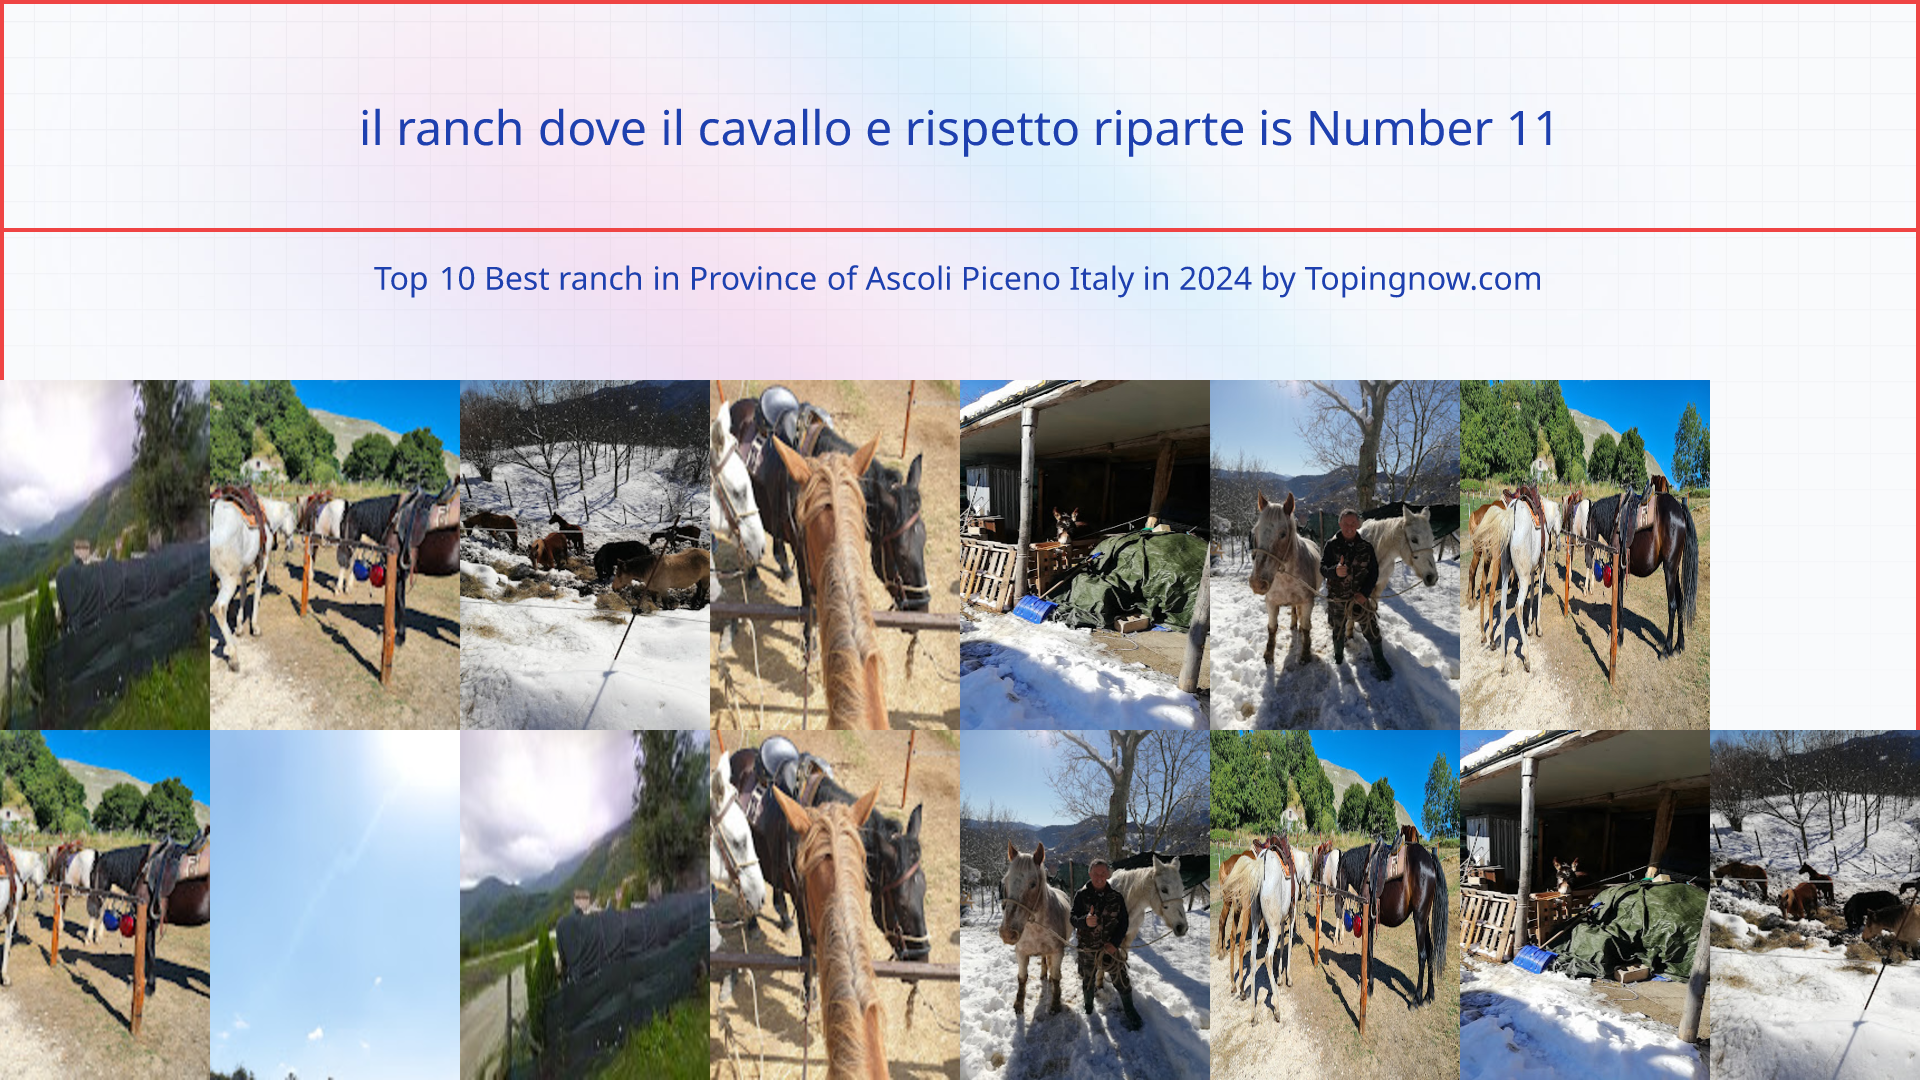 il ranch dove il cavallo e rispetto riparte: Top 10 Best ranch in Province of Ascoli Piceno Italy in 2024